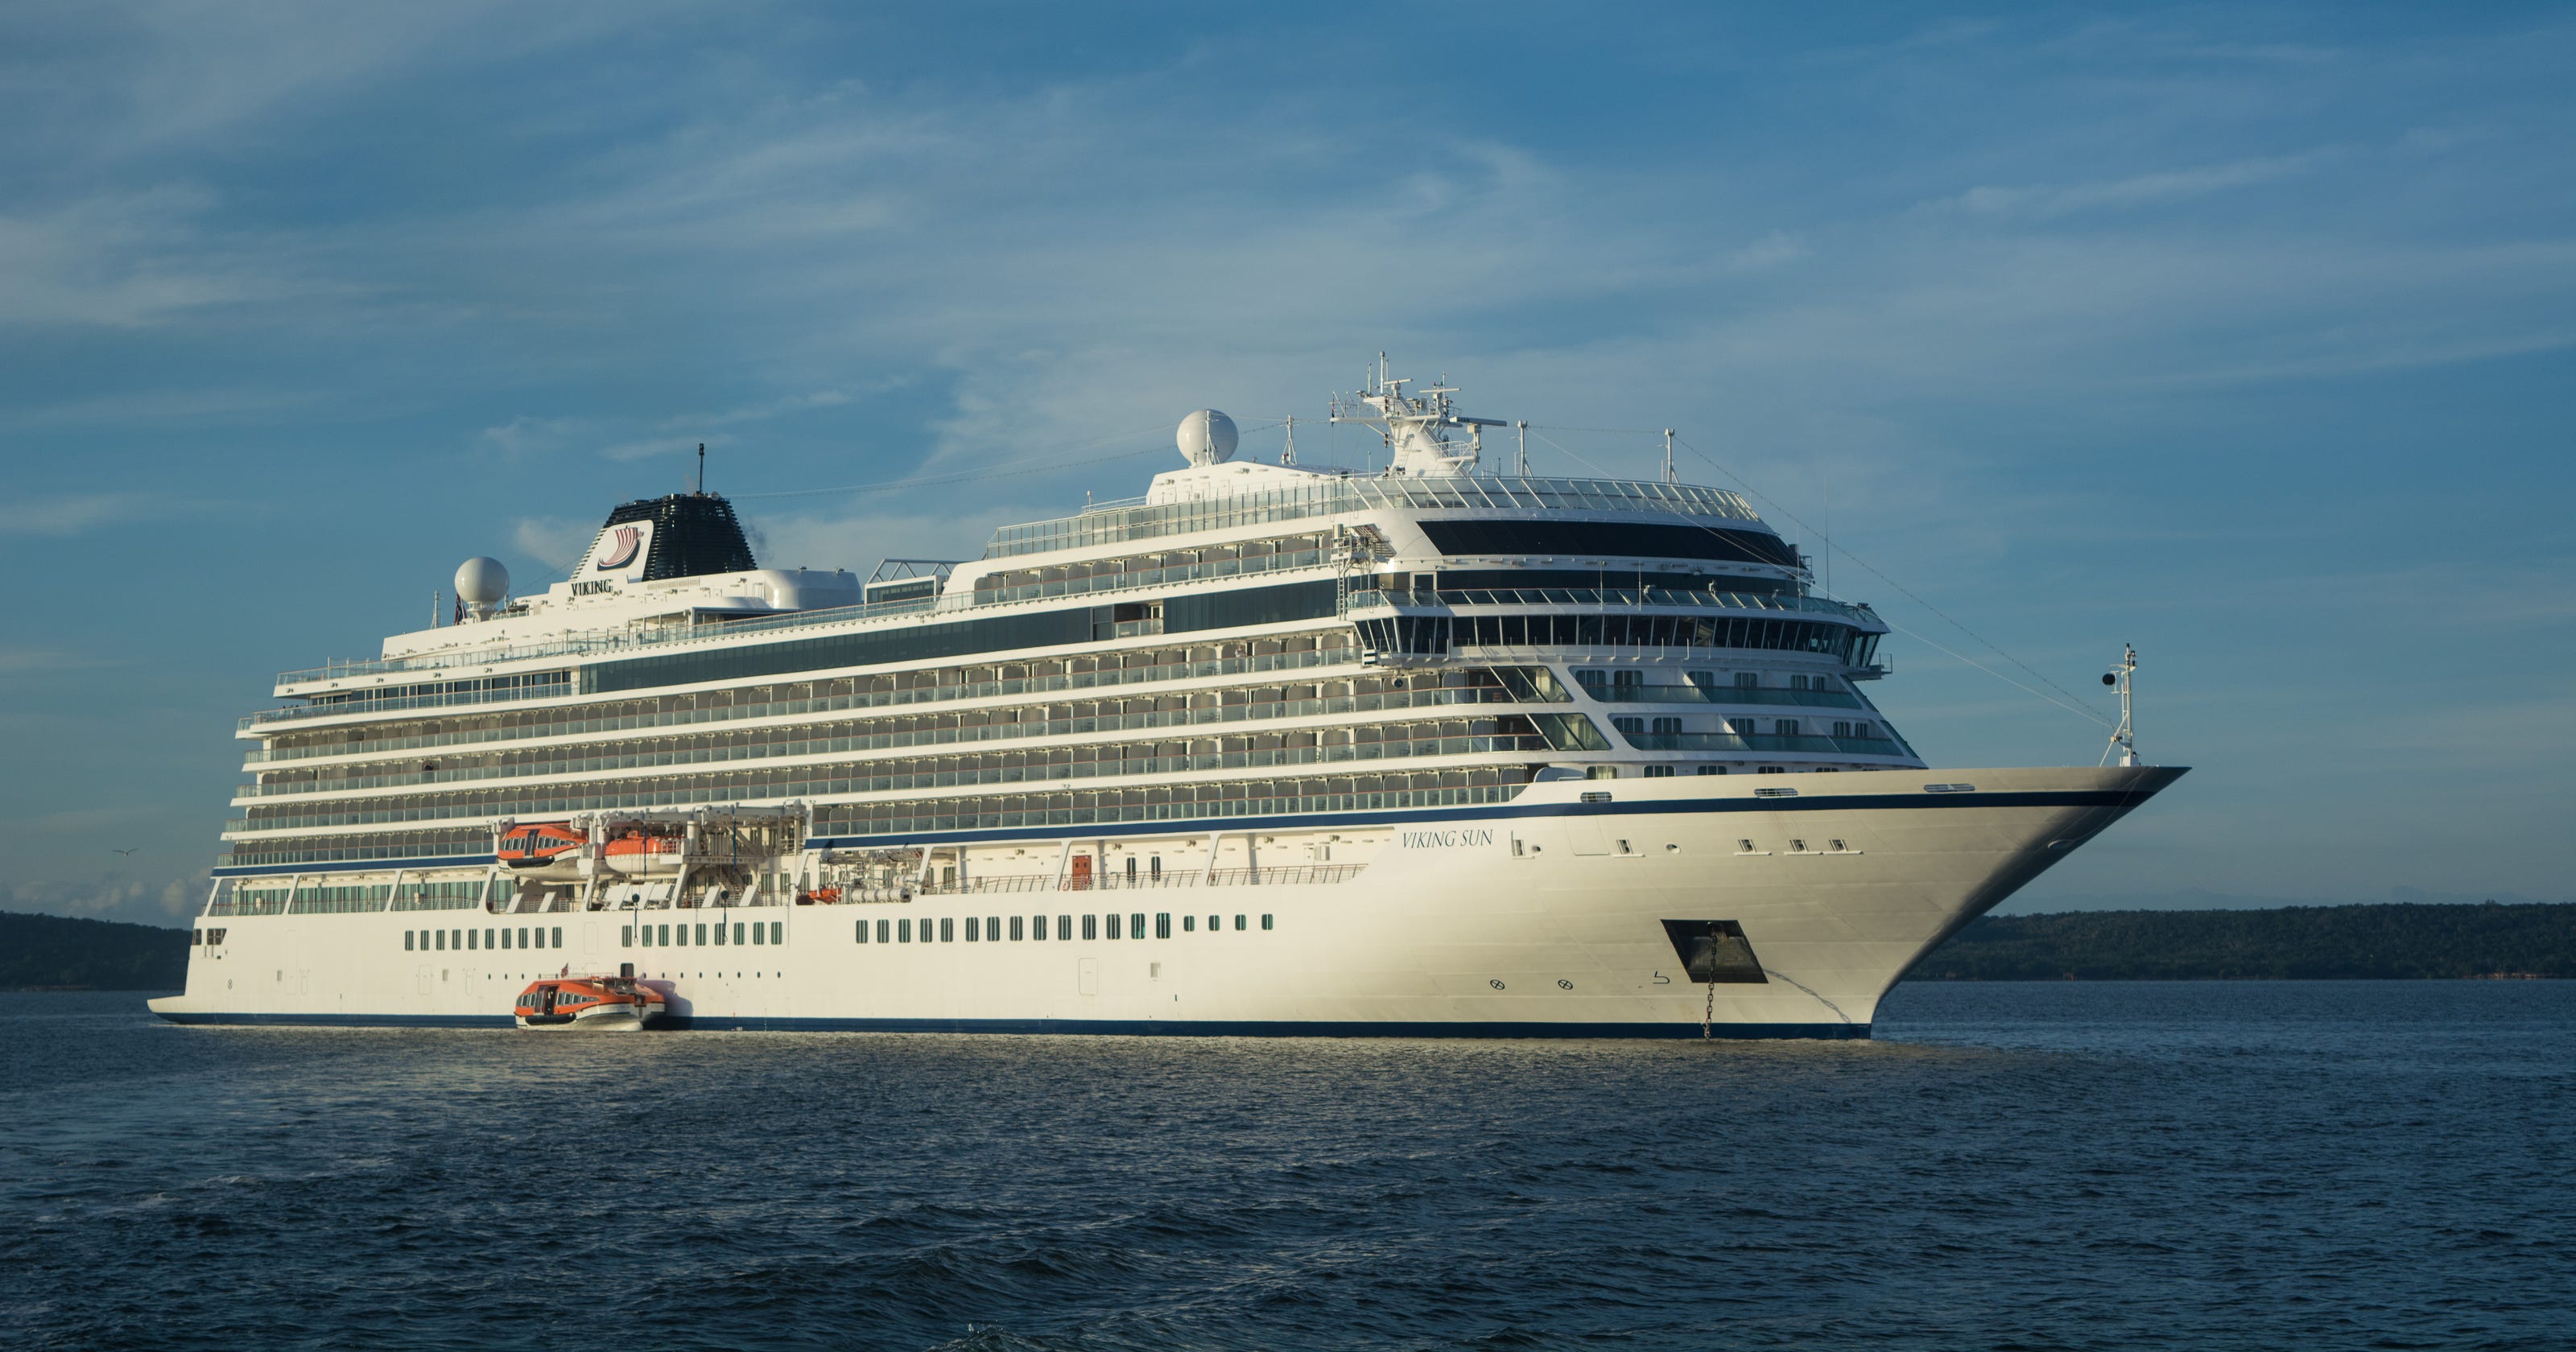 video of viking cruise ship